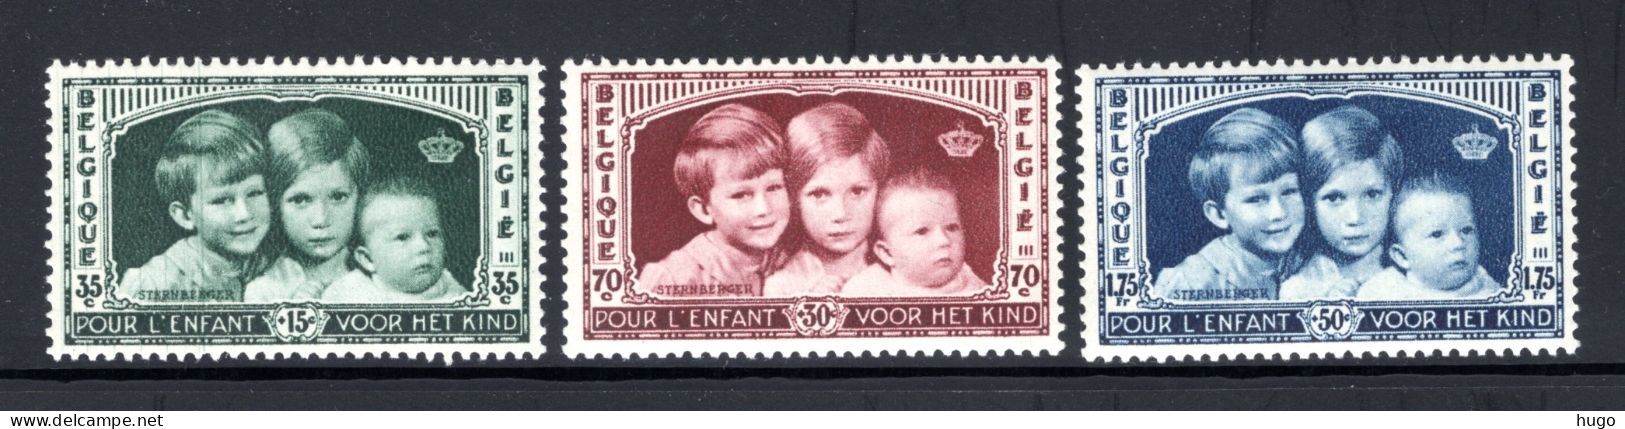 404/406 MNH 1935 - Koningskinderen - Unused Stamps